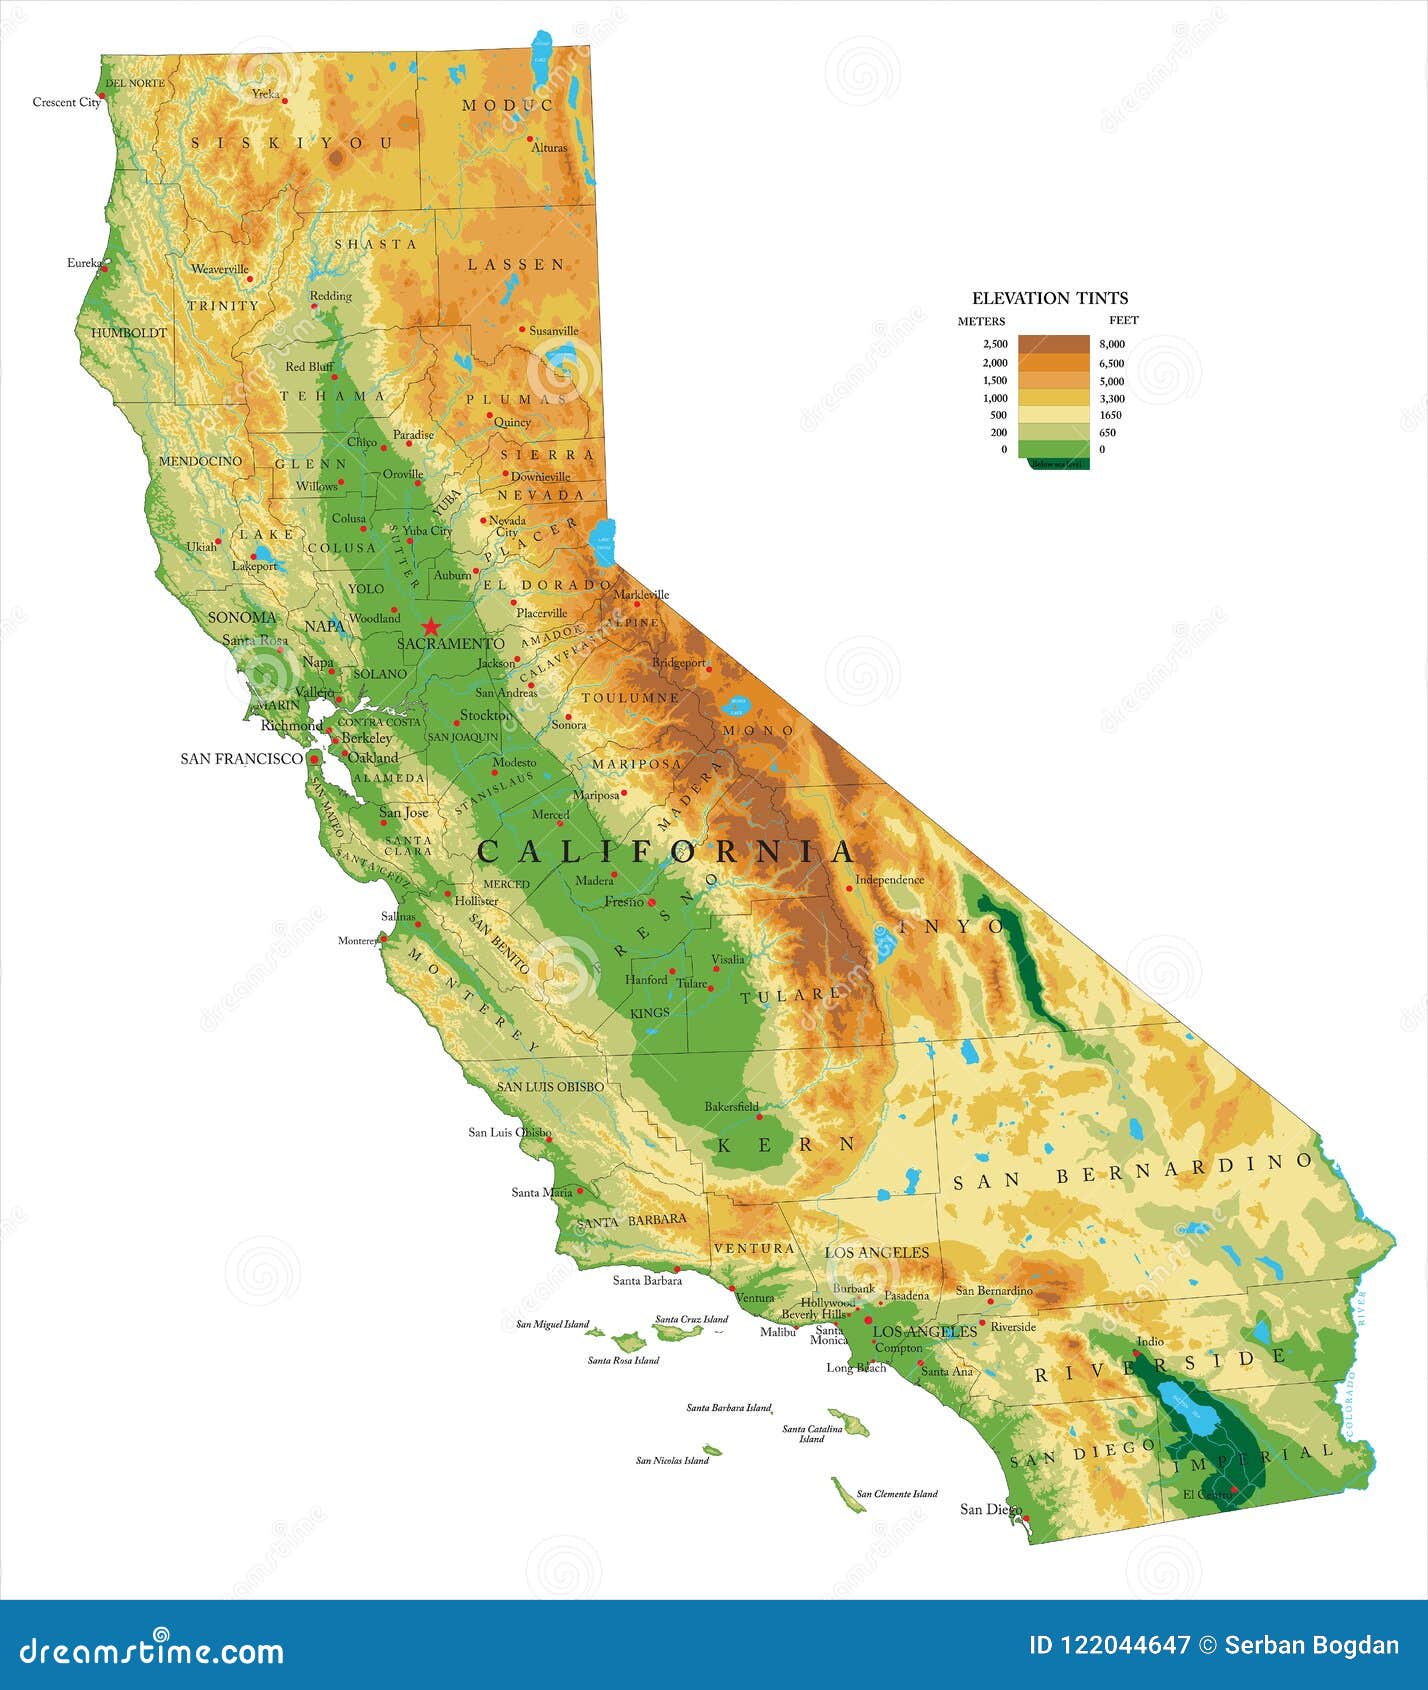 kalifornia-fizyczna-mapa-122044647.jpg